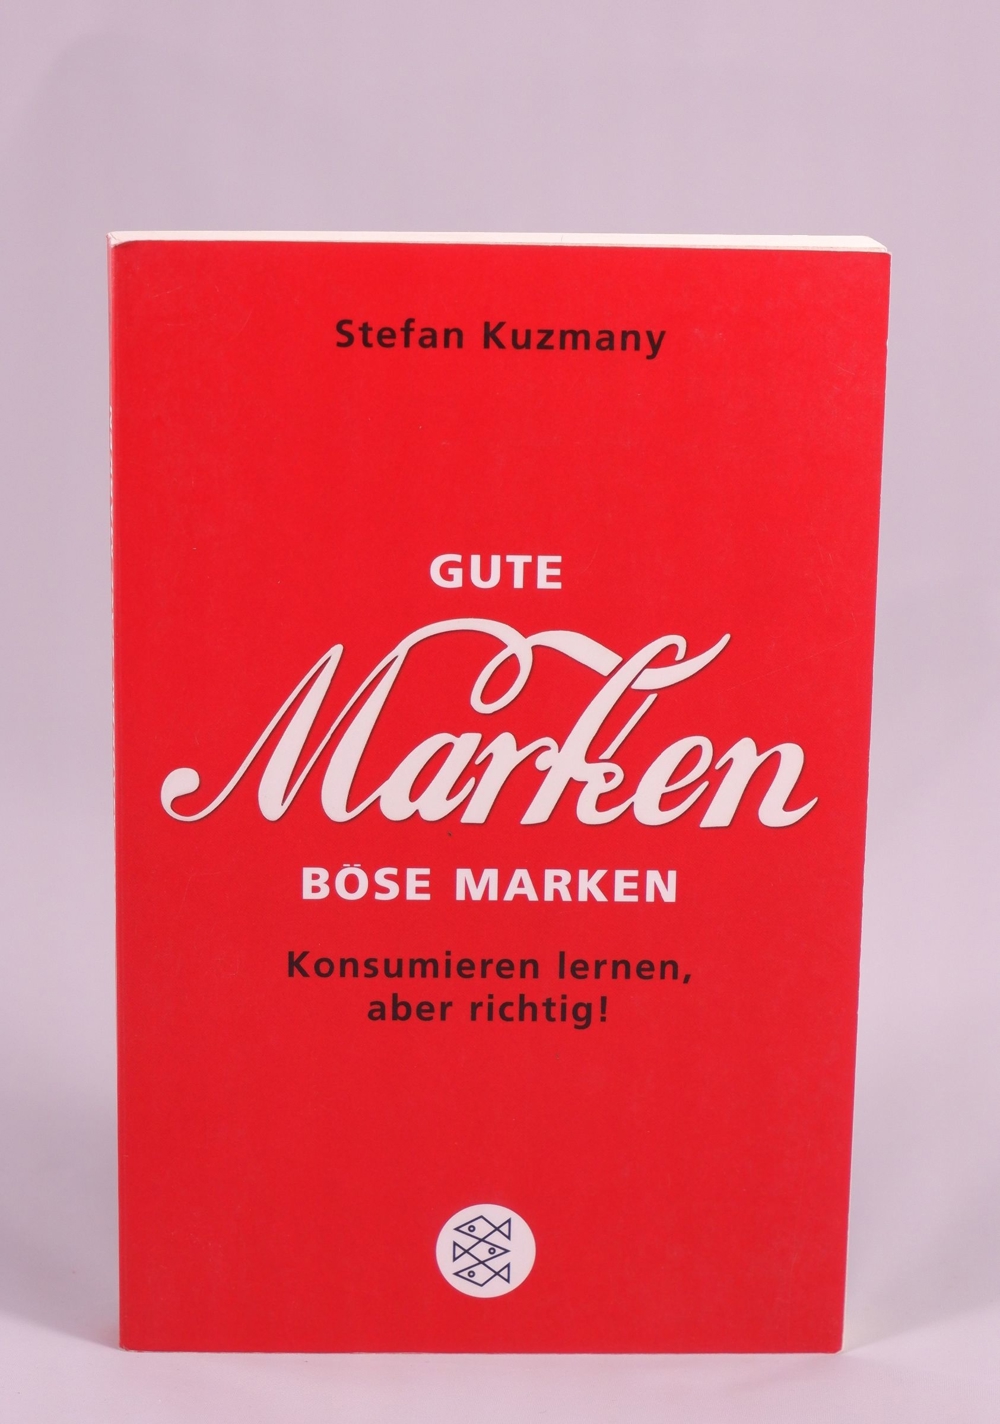 Stefan Kuzmany - Gute Marken, böse Marken - 0,90 EUR